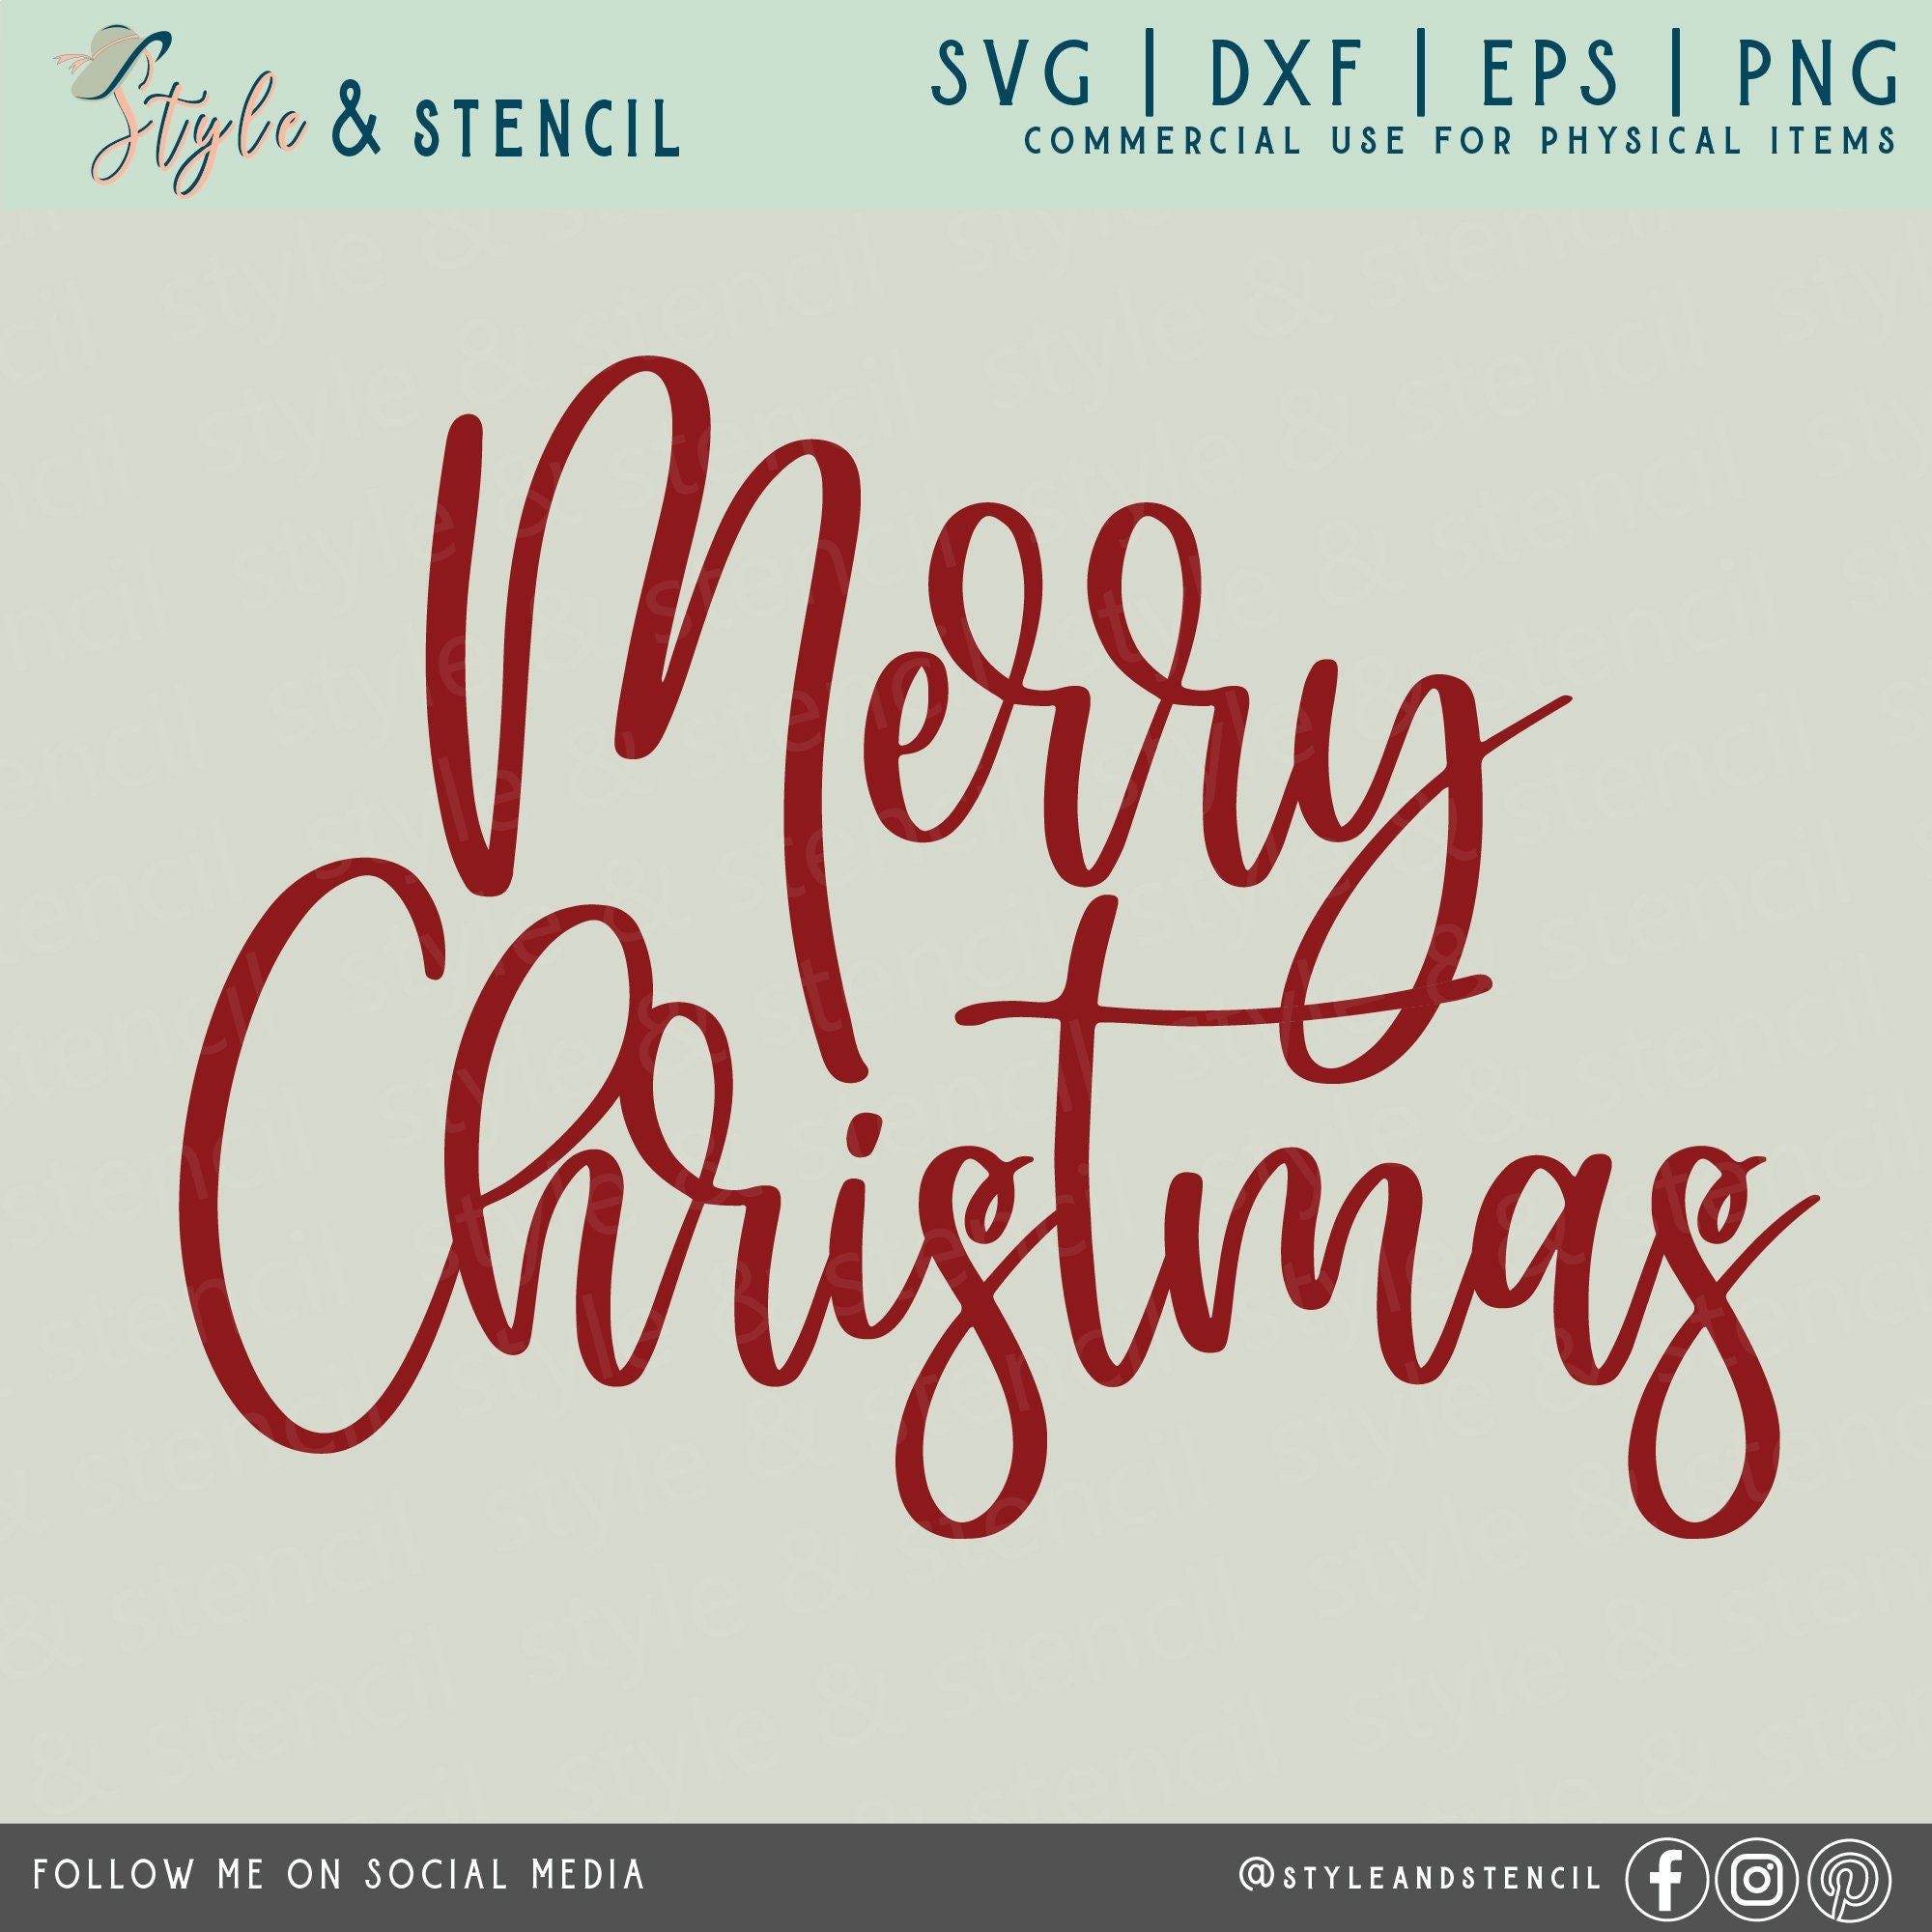 Merry Christmas SVG - Christmas SVG - Merry Christmas PNG - Christmas Shirt - Christmas Decor - Merry Christmas Sign - Christmas Wreath